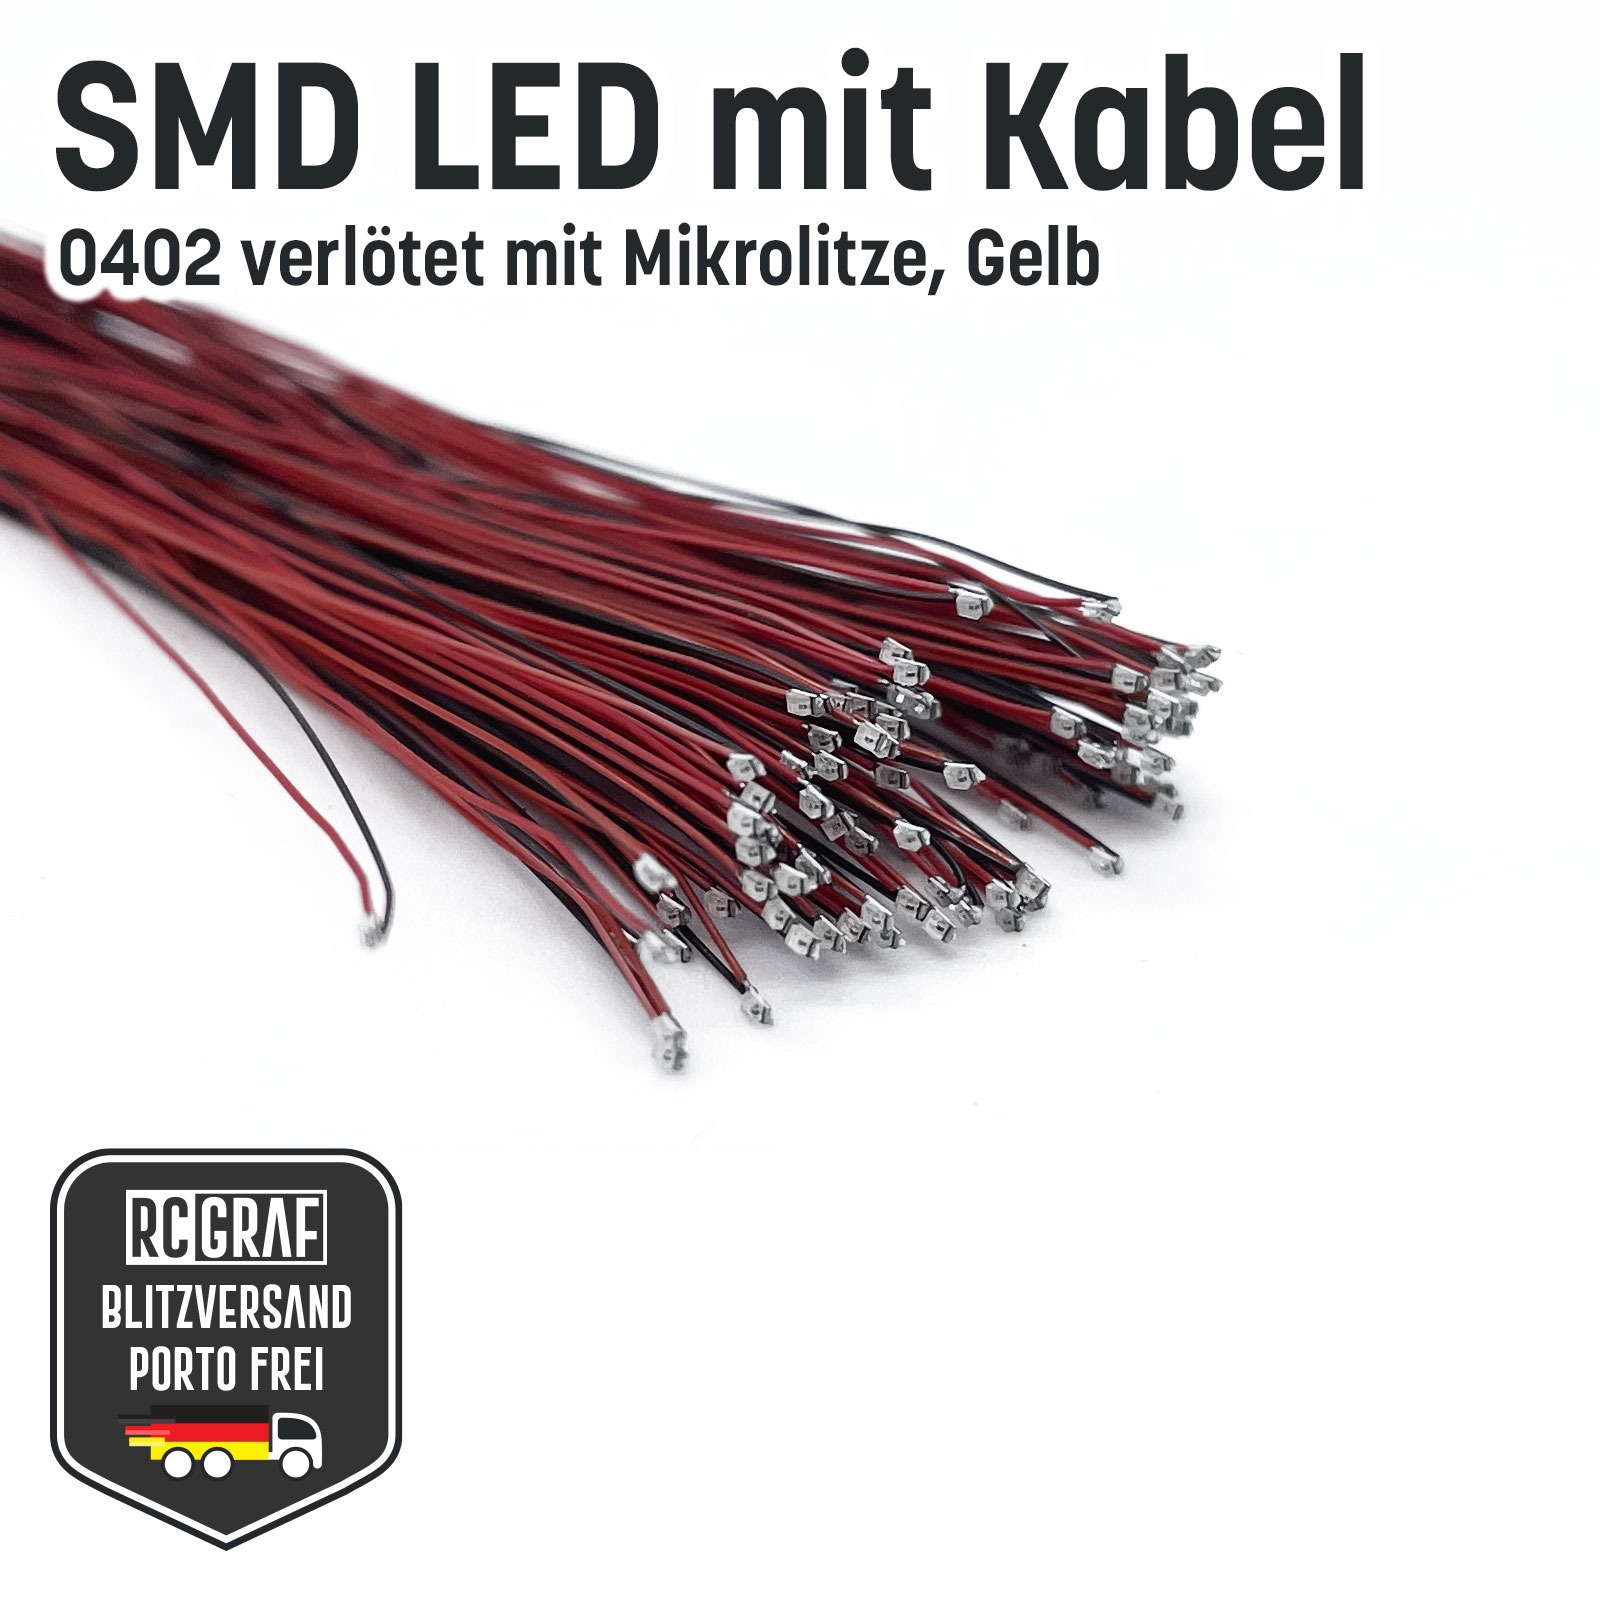 SMD LED 0402 Microlitze 30cm verlötet 9